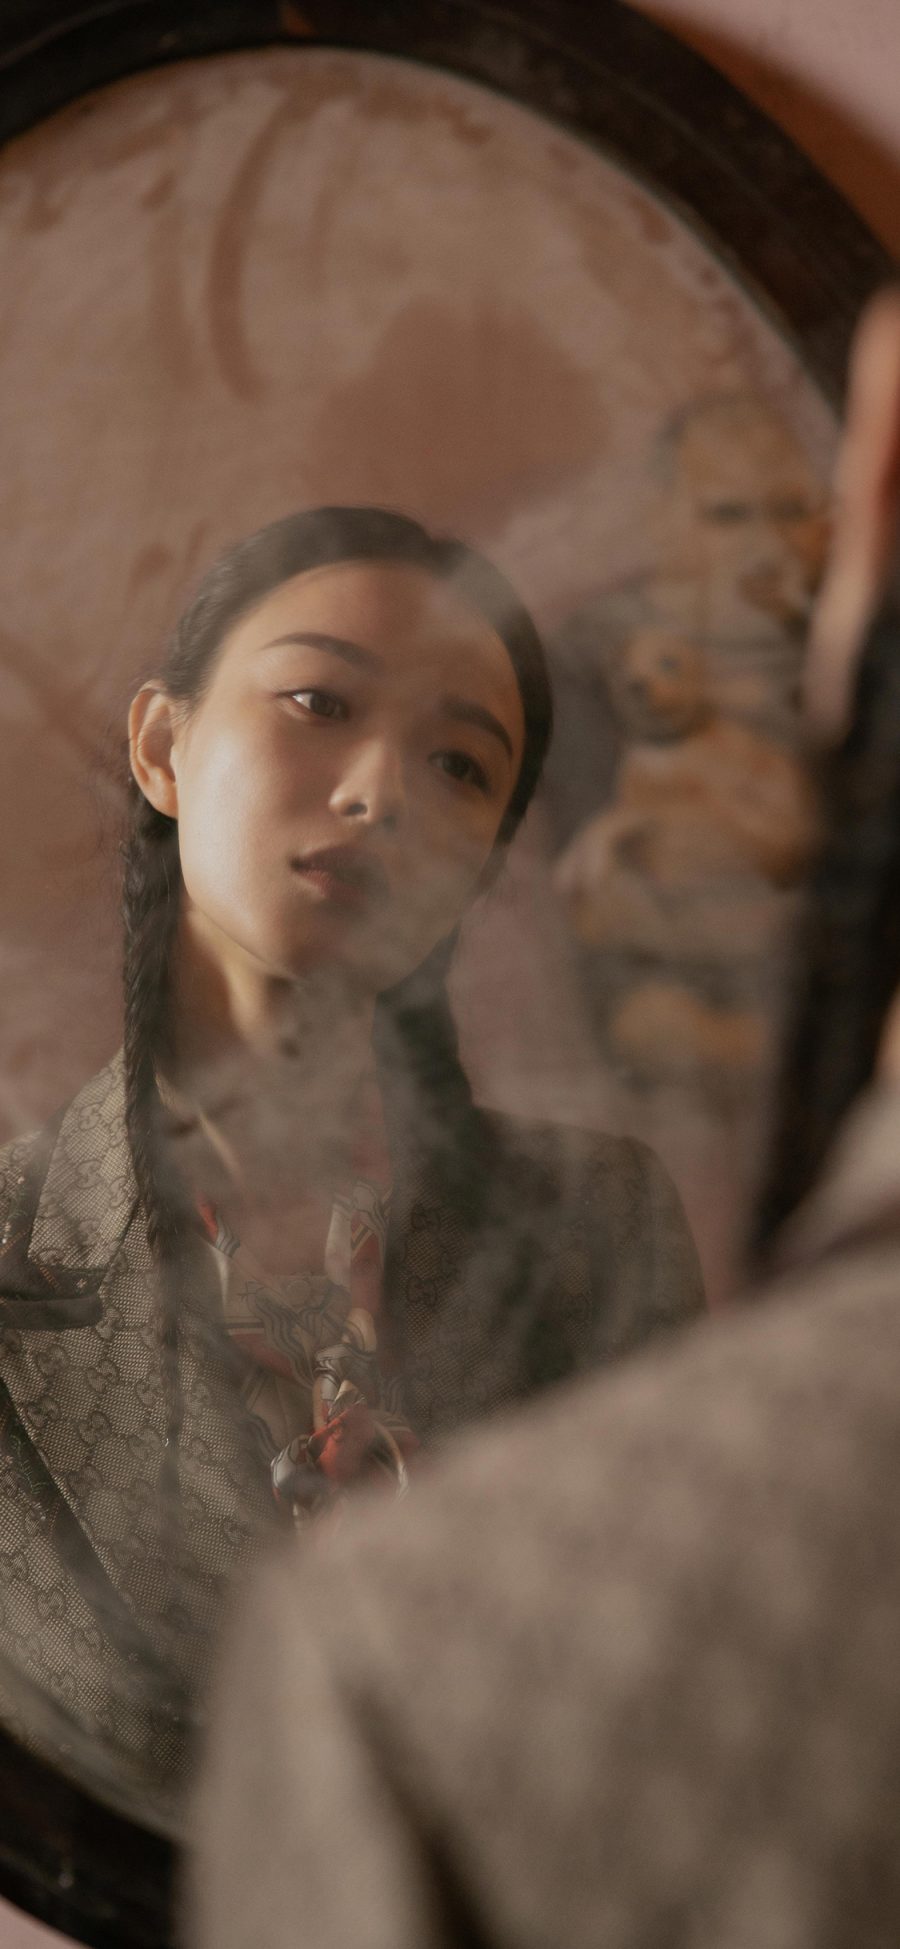 [2436×1125]倪妮 演员 明星 艺人 镜子 辫子 苹果手机美女壁纸图片